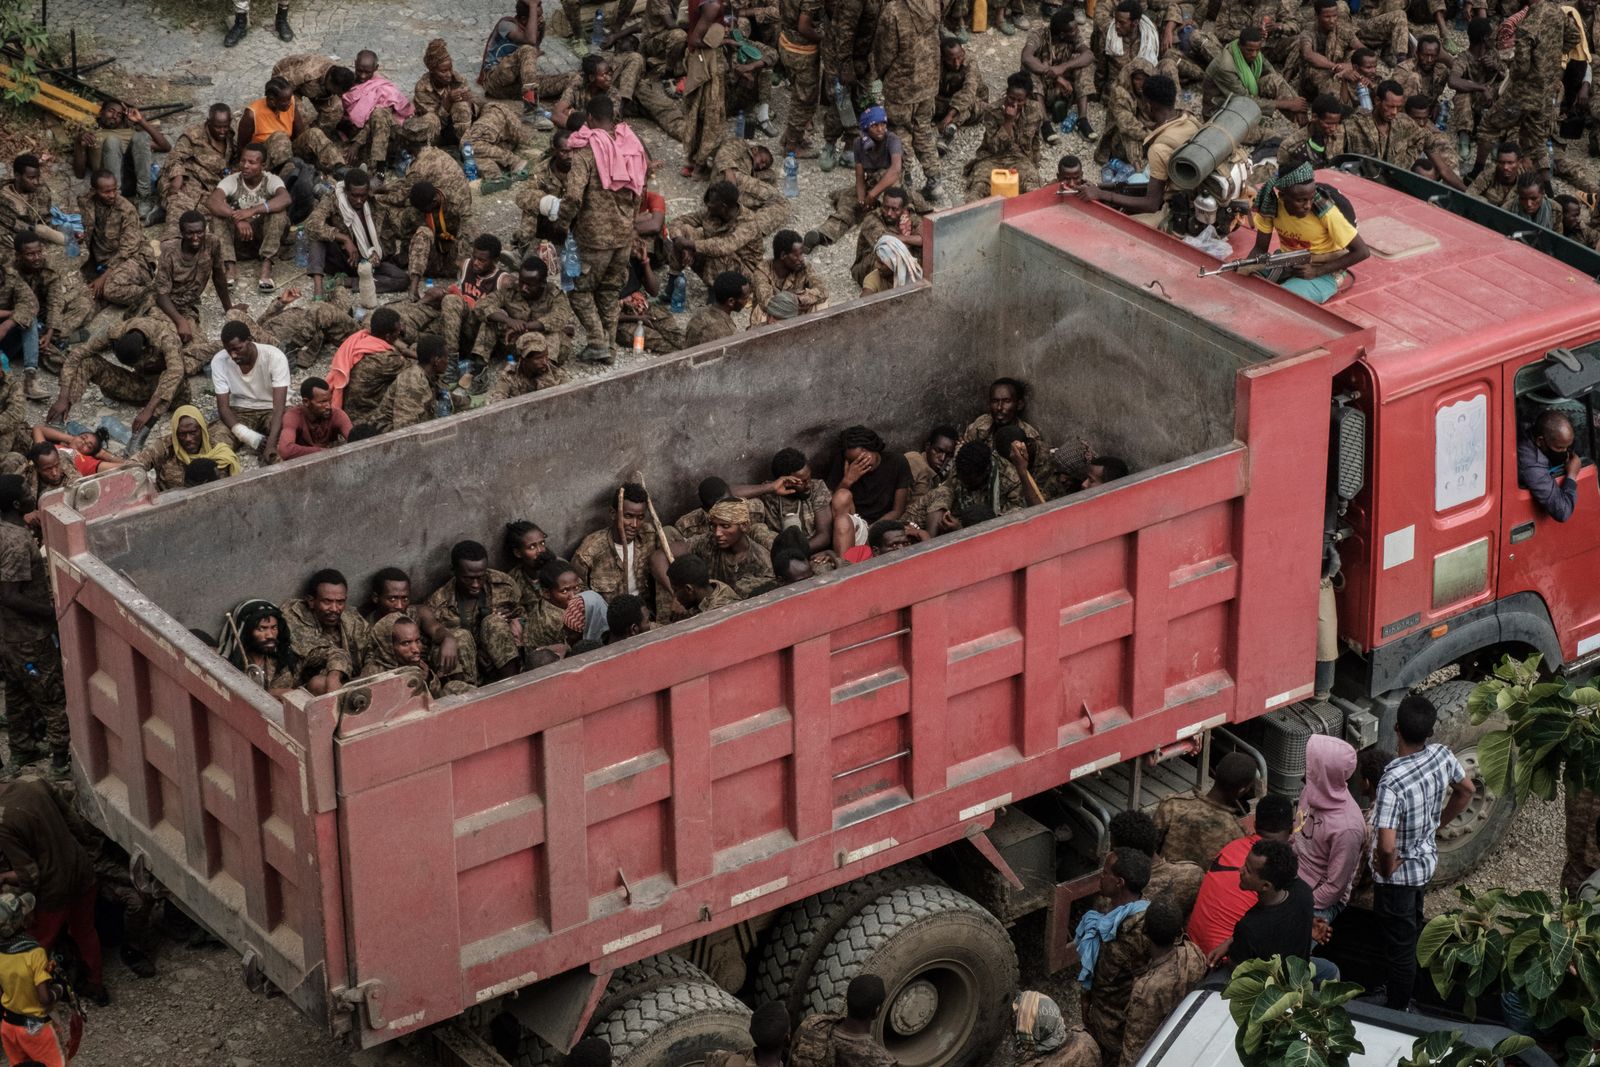 وصول جنود إثيوبيين أسرى بينهم جرحى على متن شاحنة إلى مركز ميكيلي لإعادة التأهيل في عاصمة منطقة تيغراي - 2 يوليو 2021 - AFP